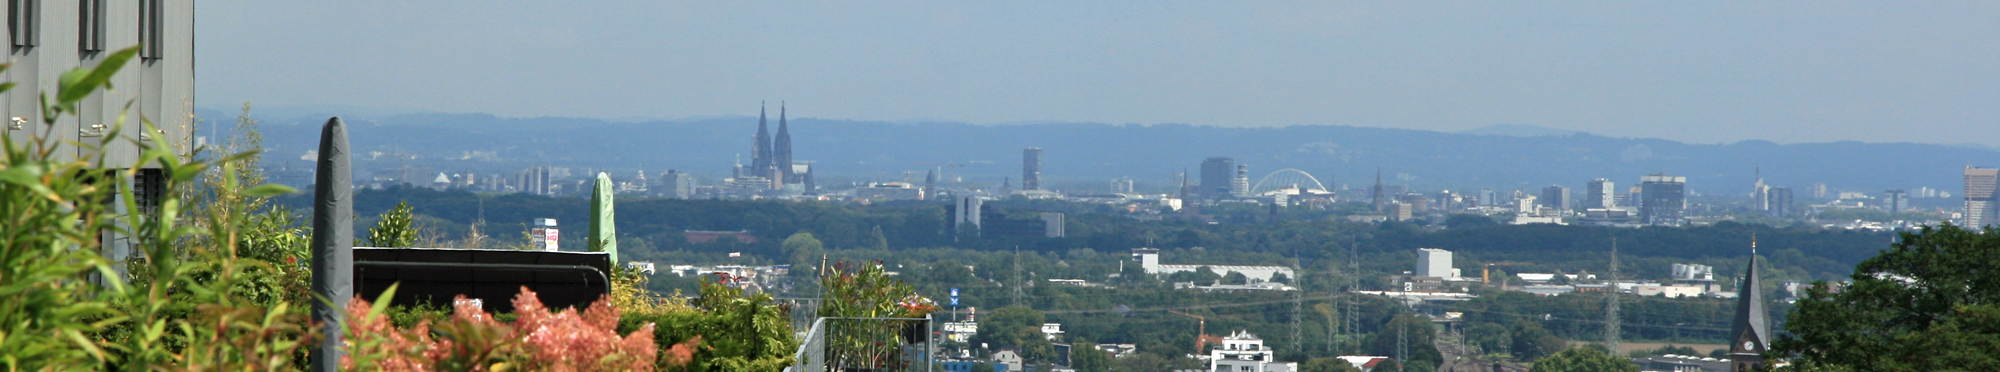 Das Bild zeigt einen Blick über die Frechener Innenstadt. Im Hintergrund ist Köln mit dem Dom zu erkennen.